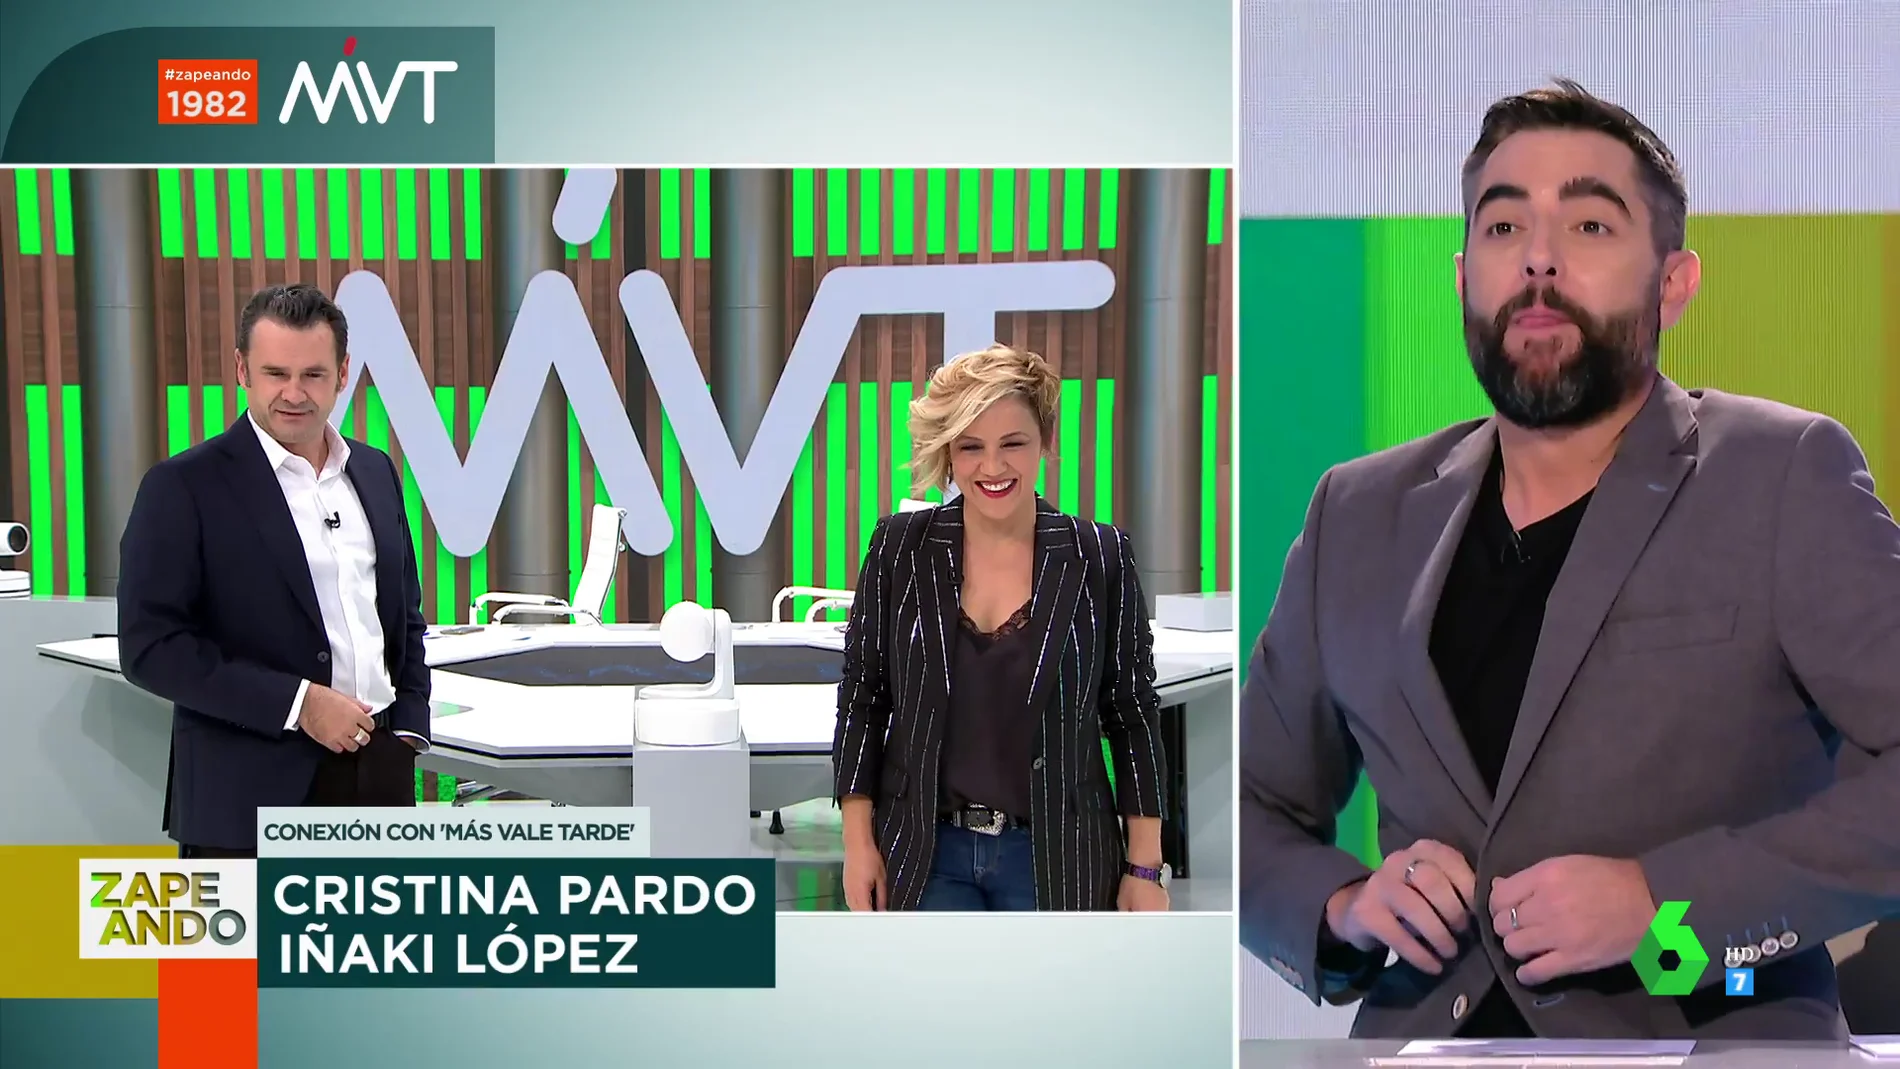 El pique de Dani Mateo con Iñaki López por su comentario sobre el botón de su chaqueta: "He ganado salud"